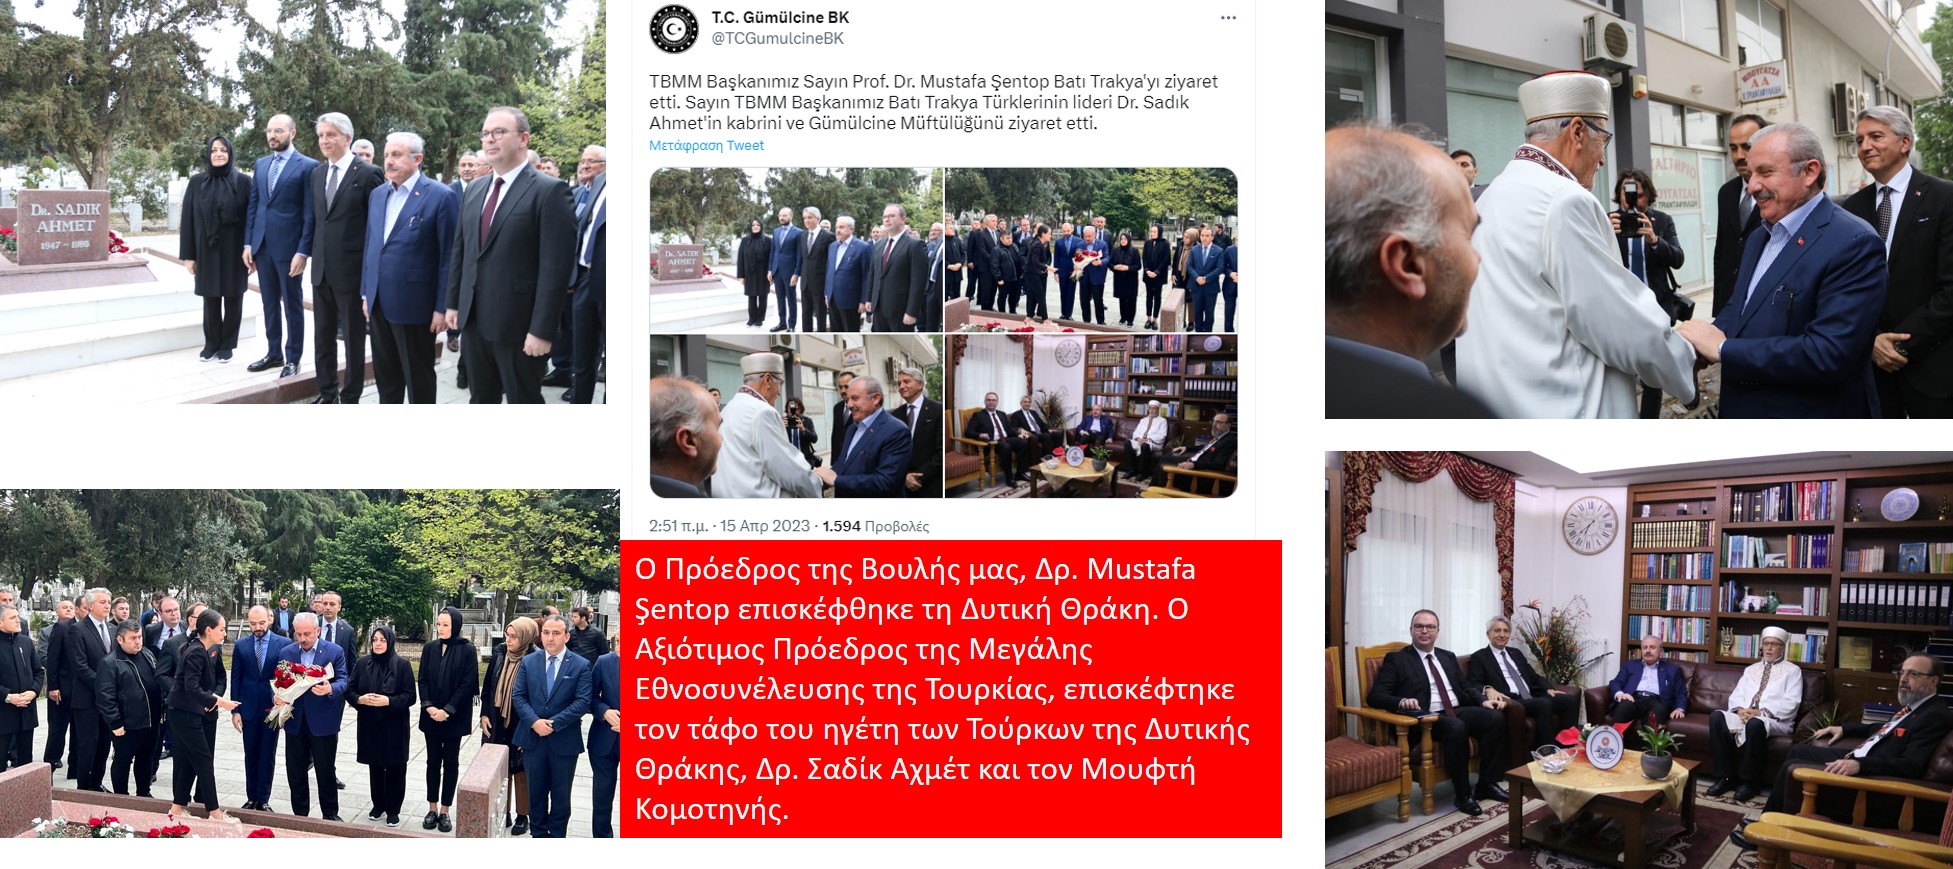 Ο πρόεδρος της τουρκικής Βουλής στη Θράκη «ισοφάρισε» την επίσκεψη Δένδια στην Ίμβρο!